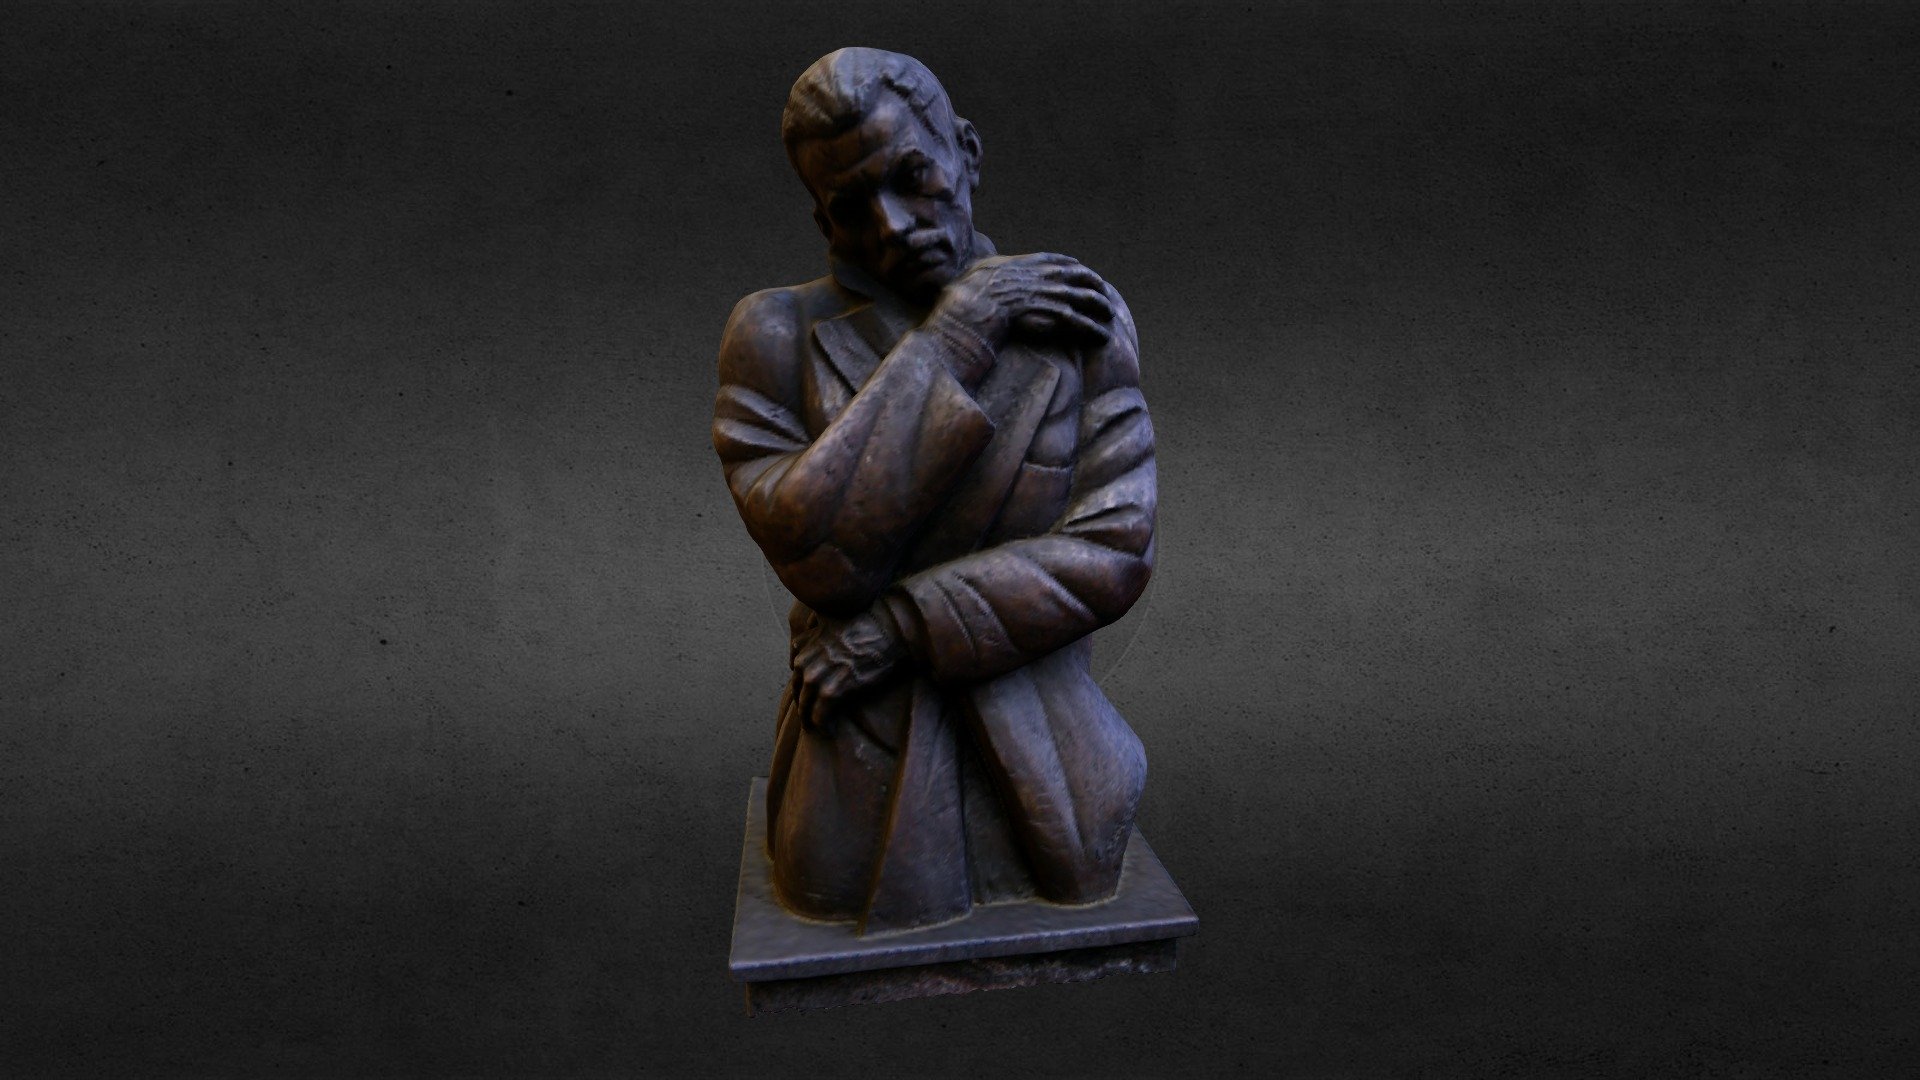 Attila József statue